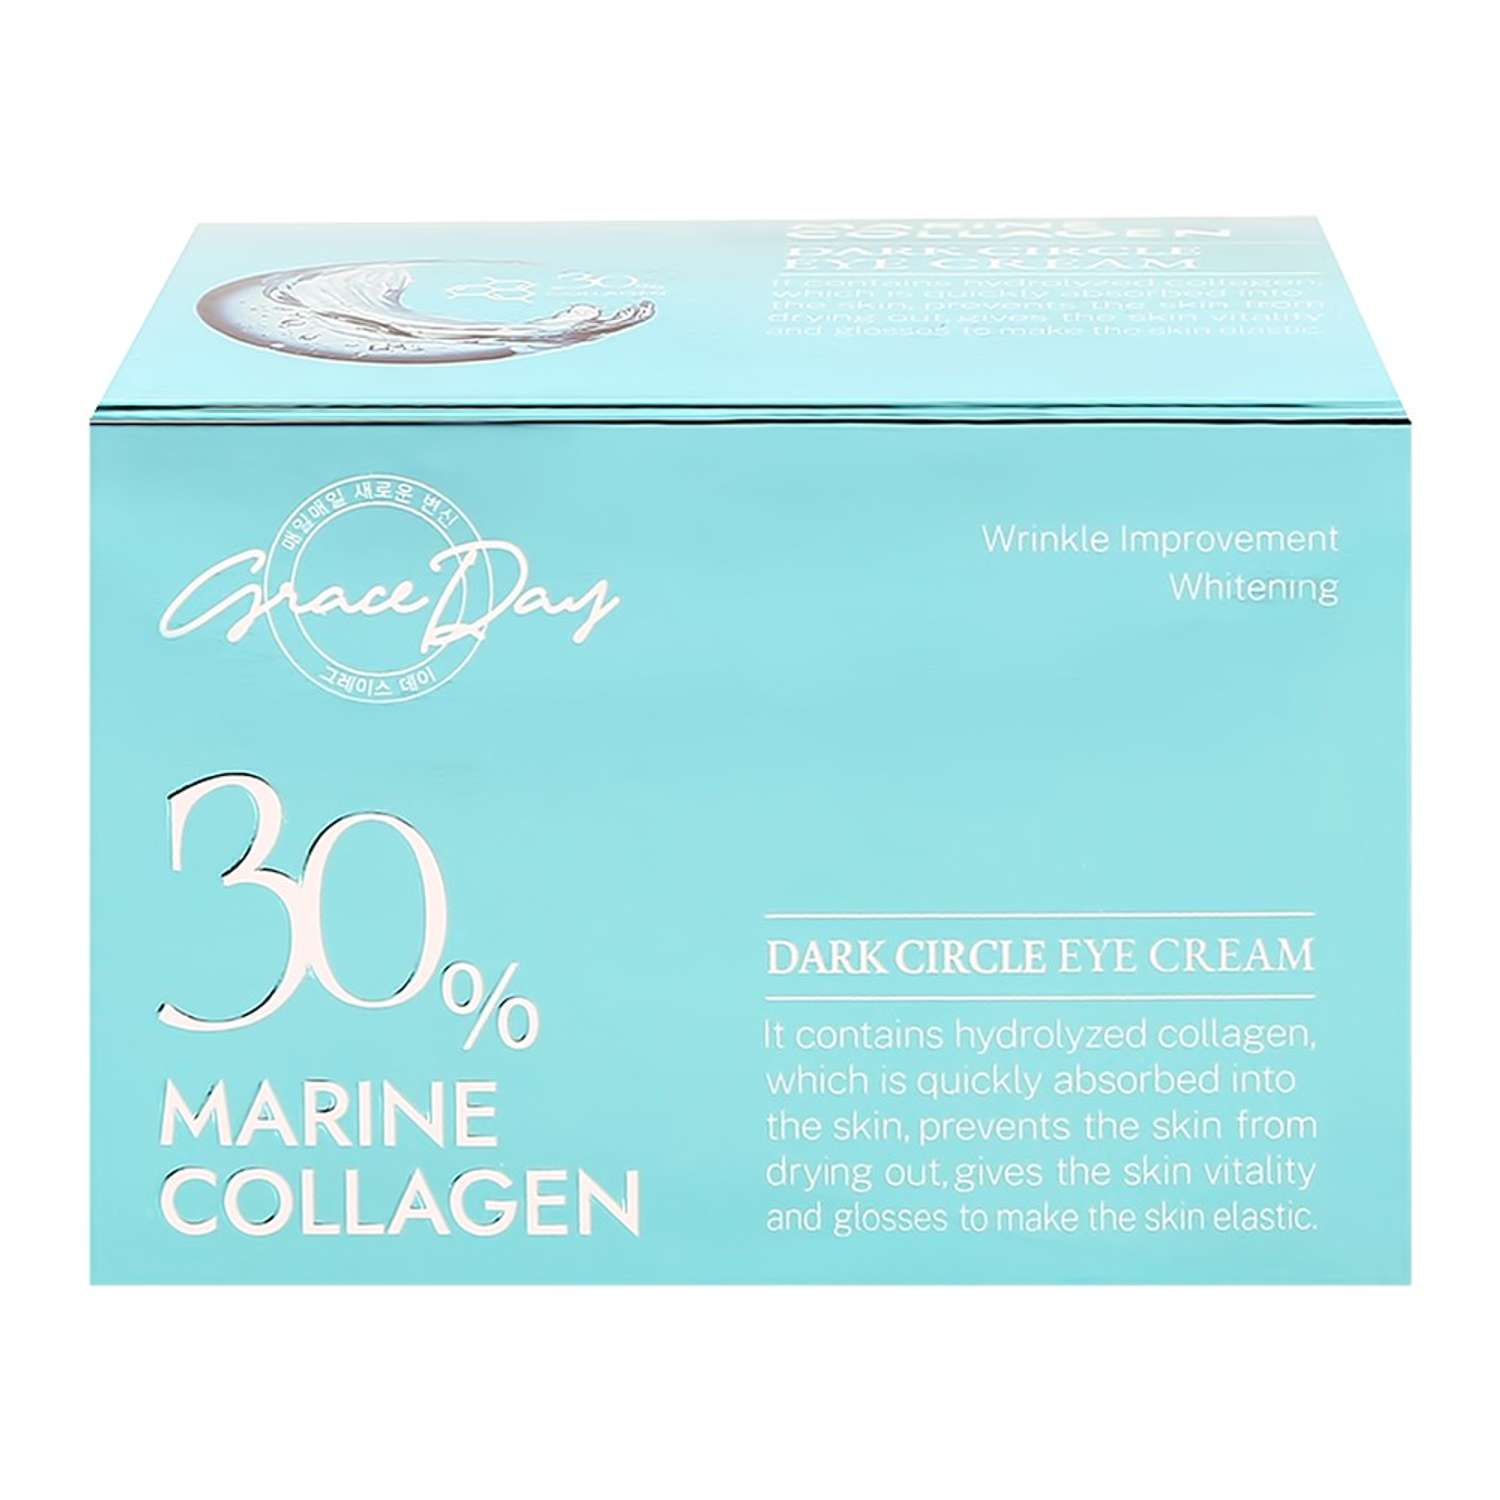 Крем для области вокруг глаз Grace day 30% marine collagen с гидролизованным коллагеном против темных кругов 30 мл - фото 5